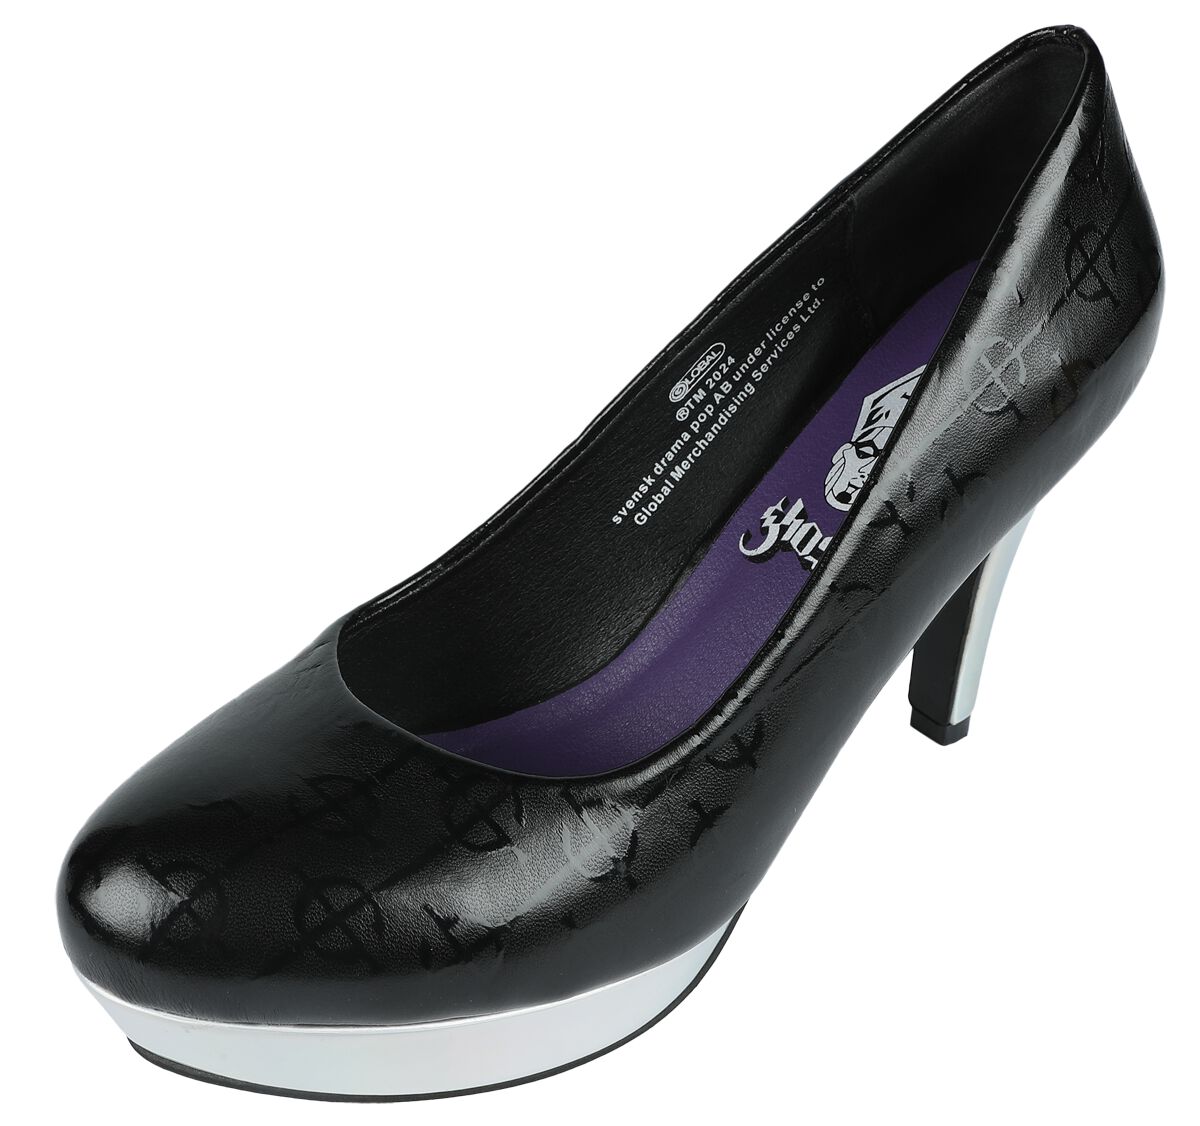 Ghost EMP Signature Collection High Heel schwarz silberfarben in EU40